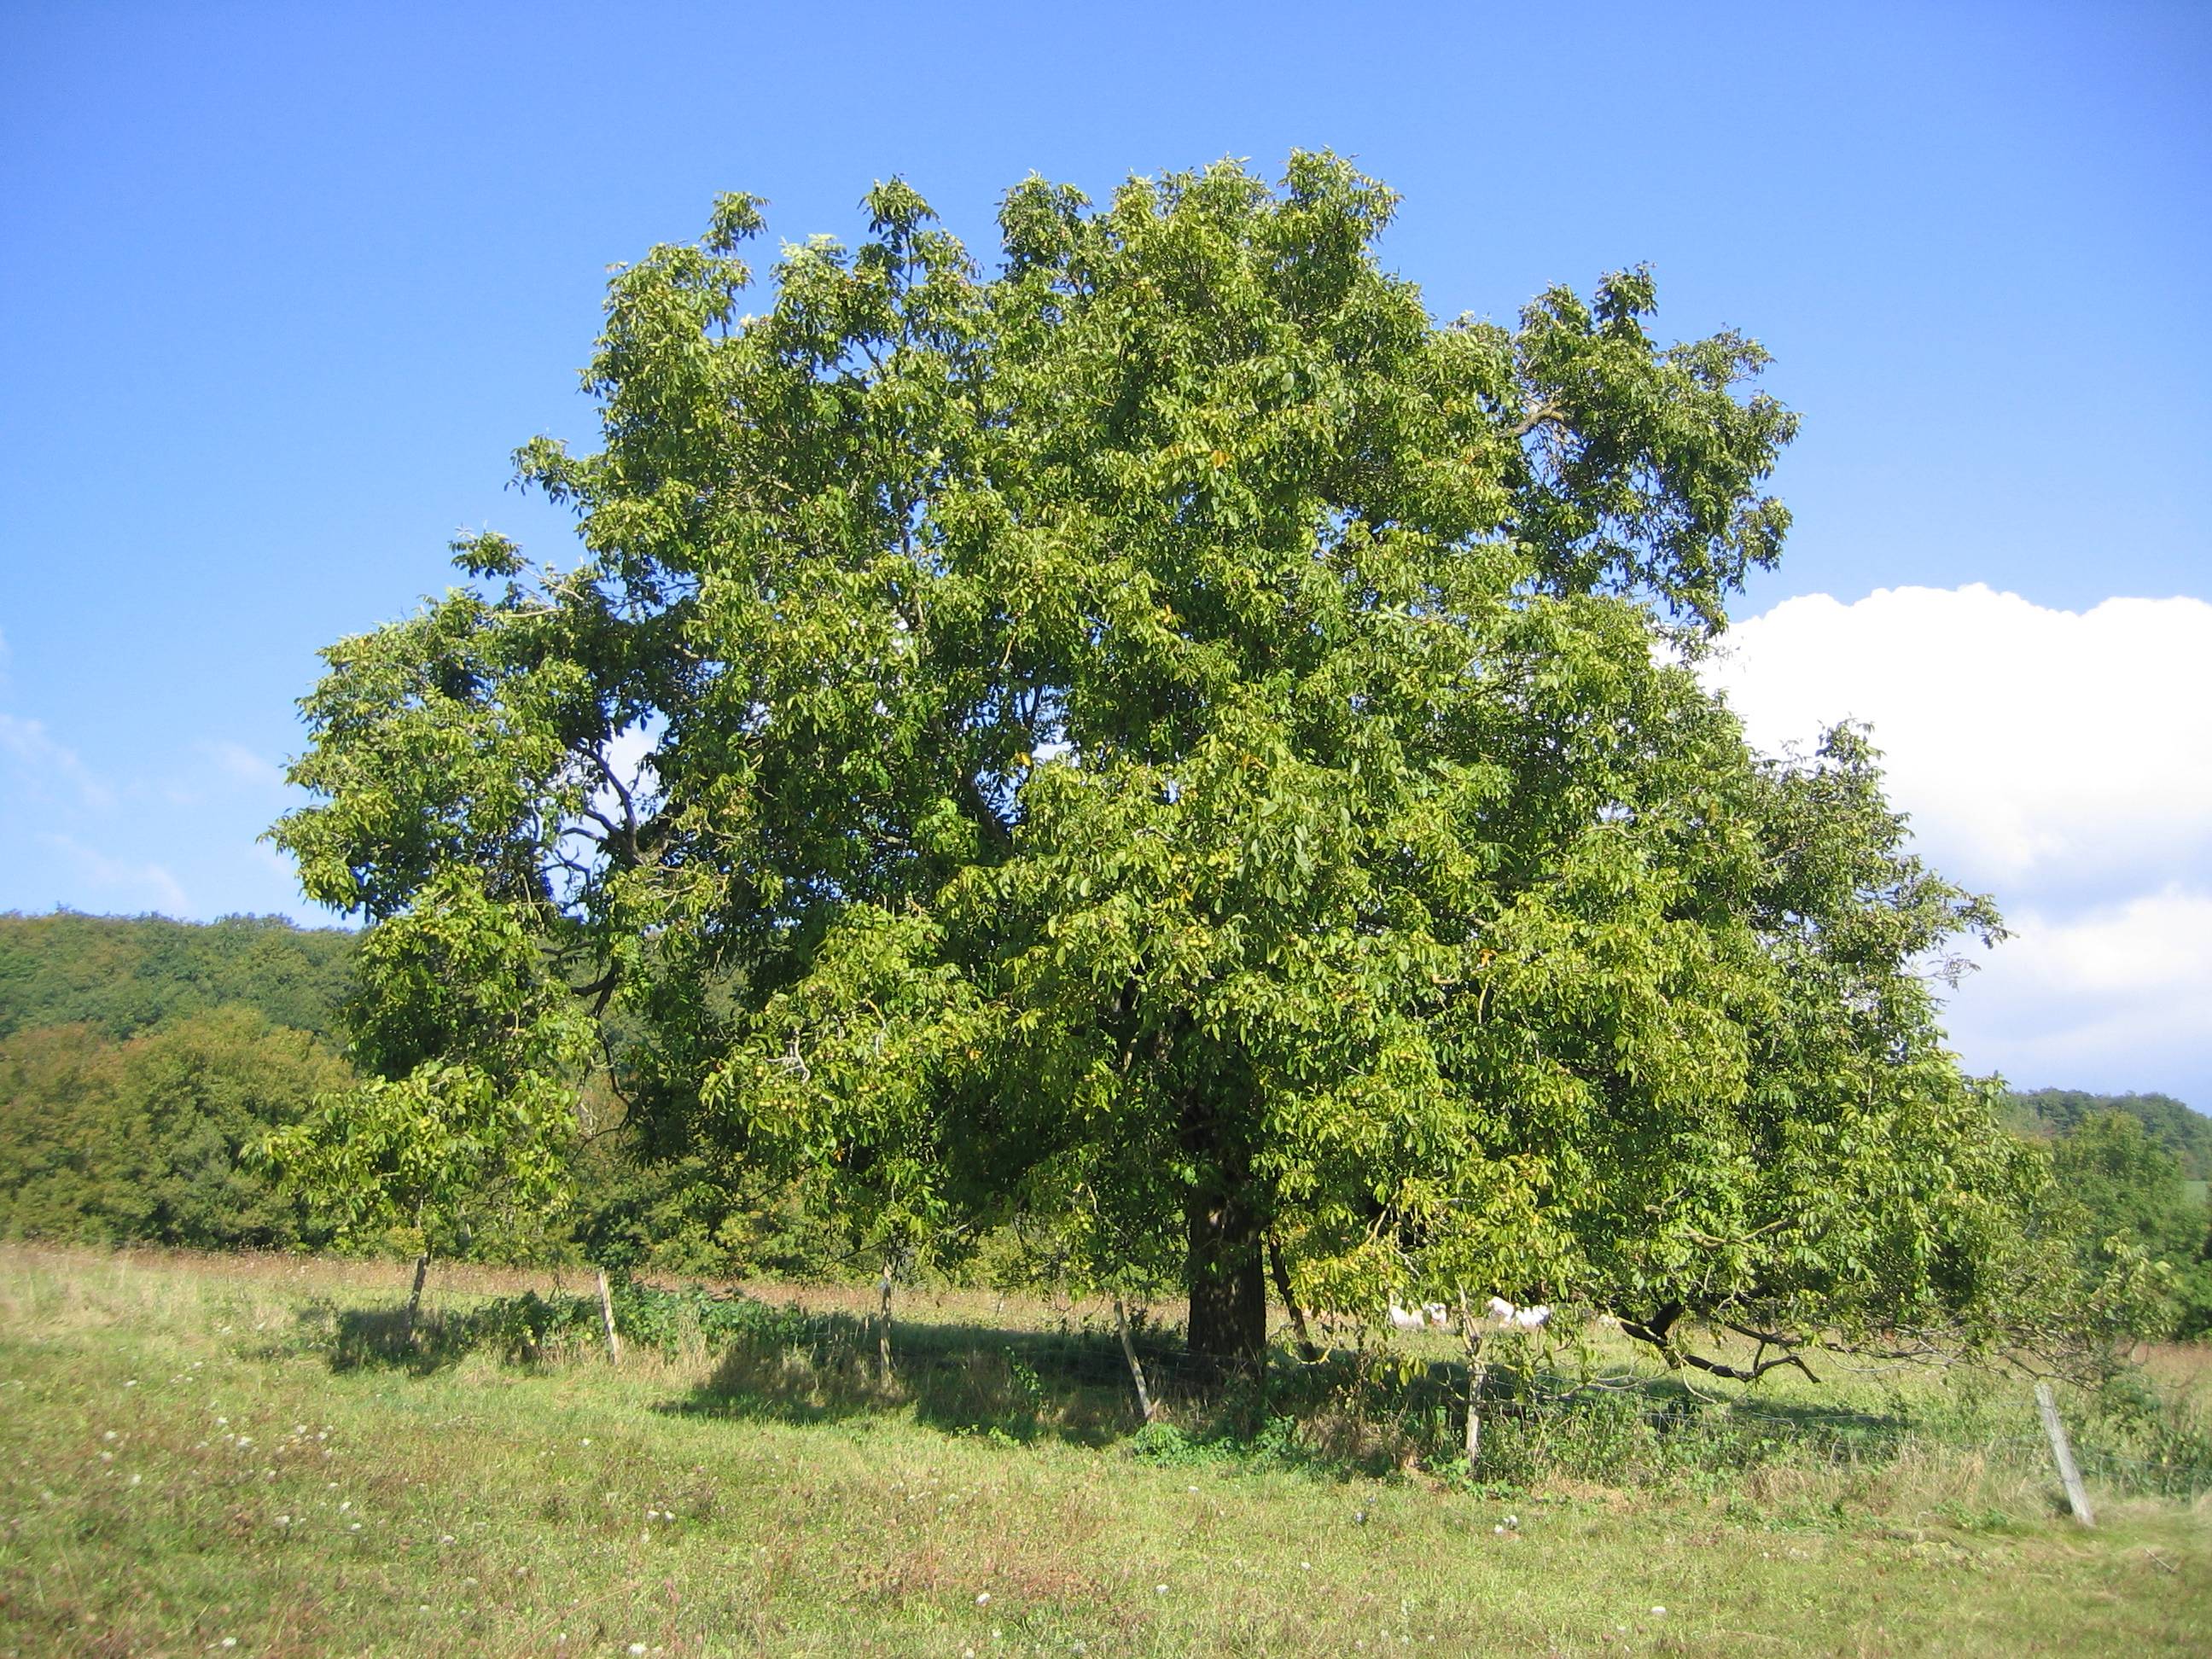 Полезные свойства листьев грецкого ореха и возможные противопоказания